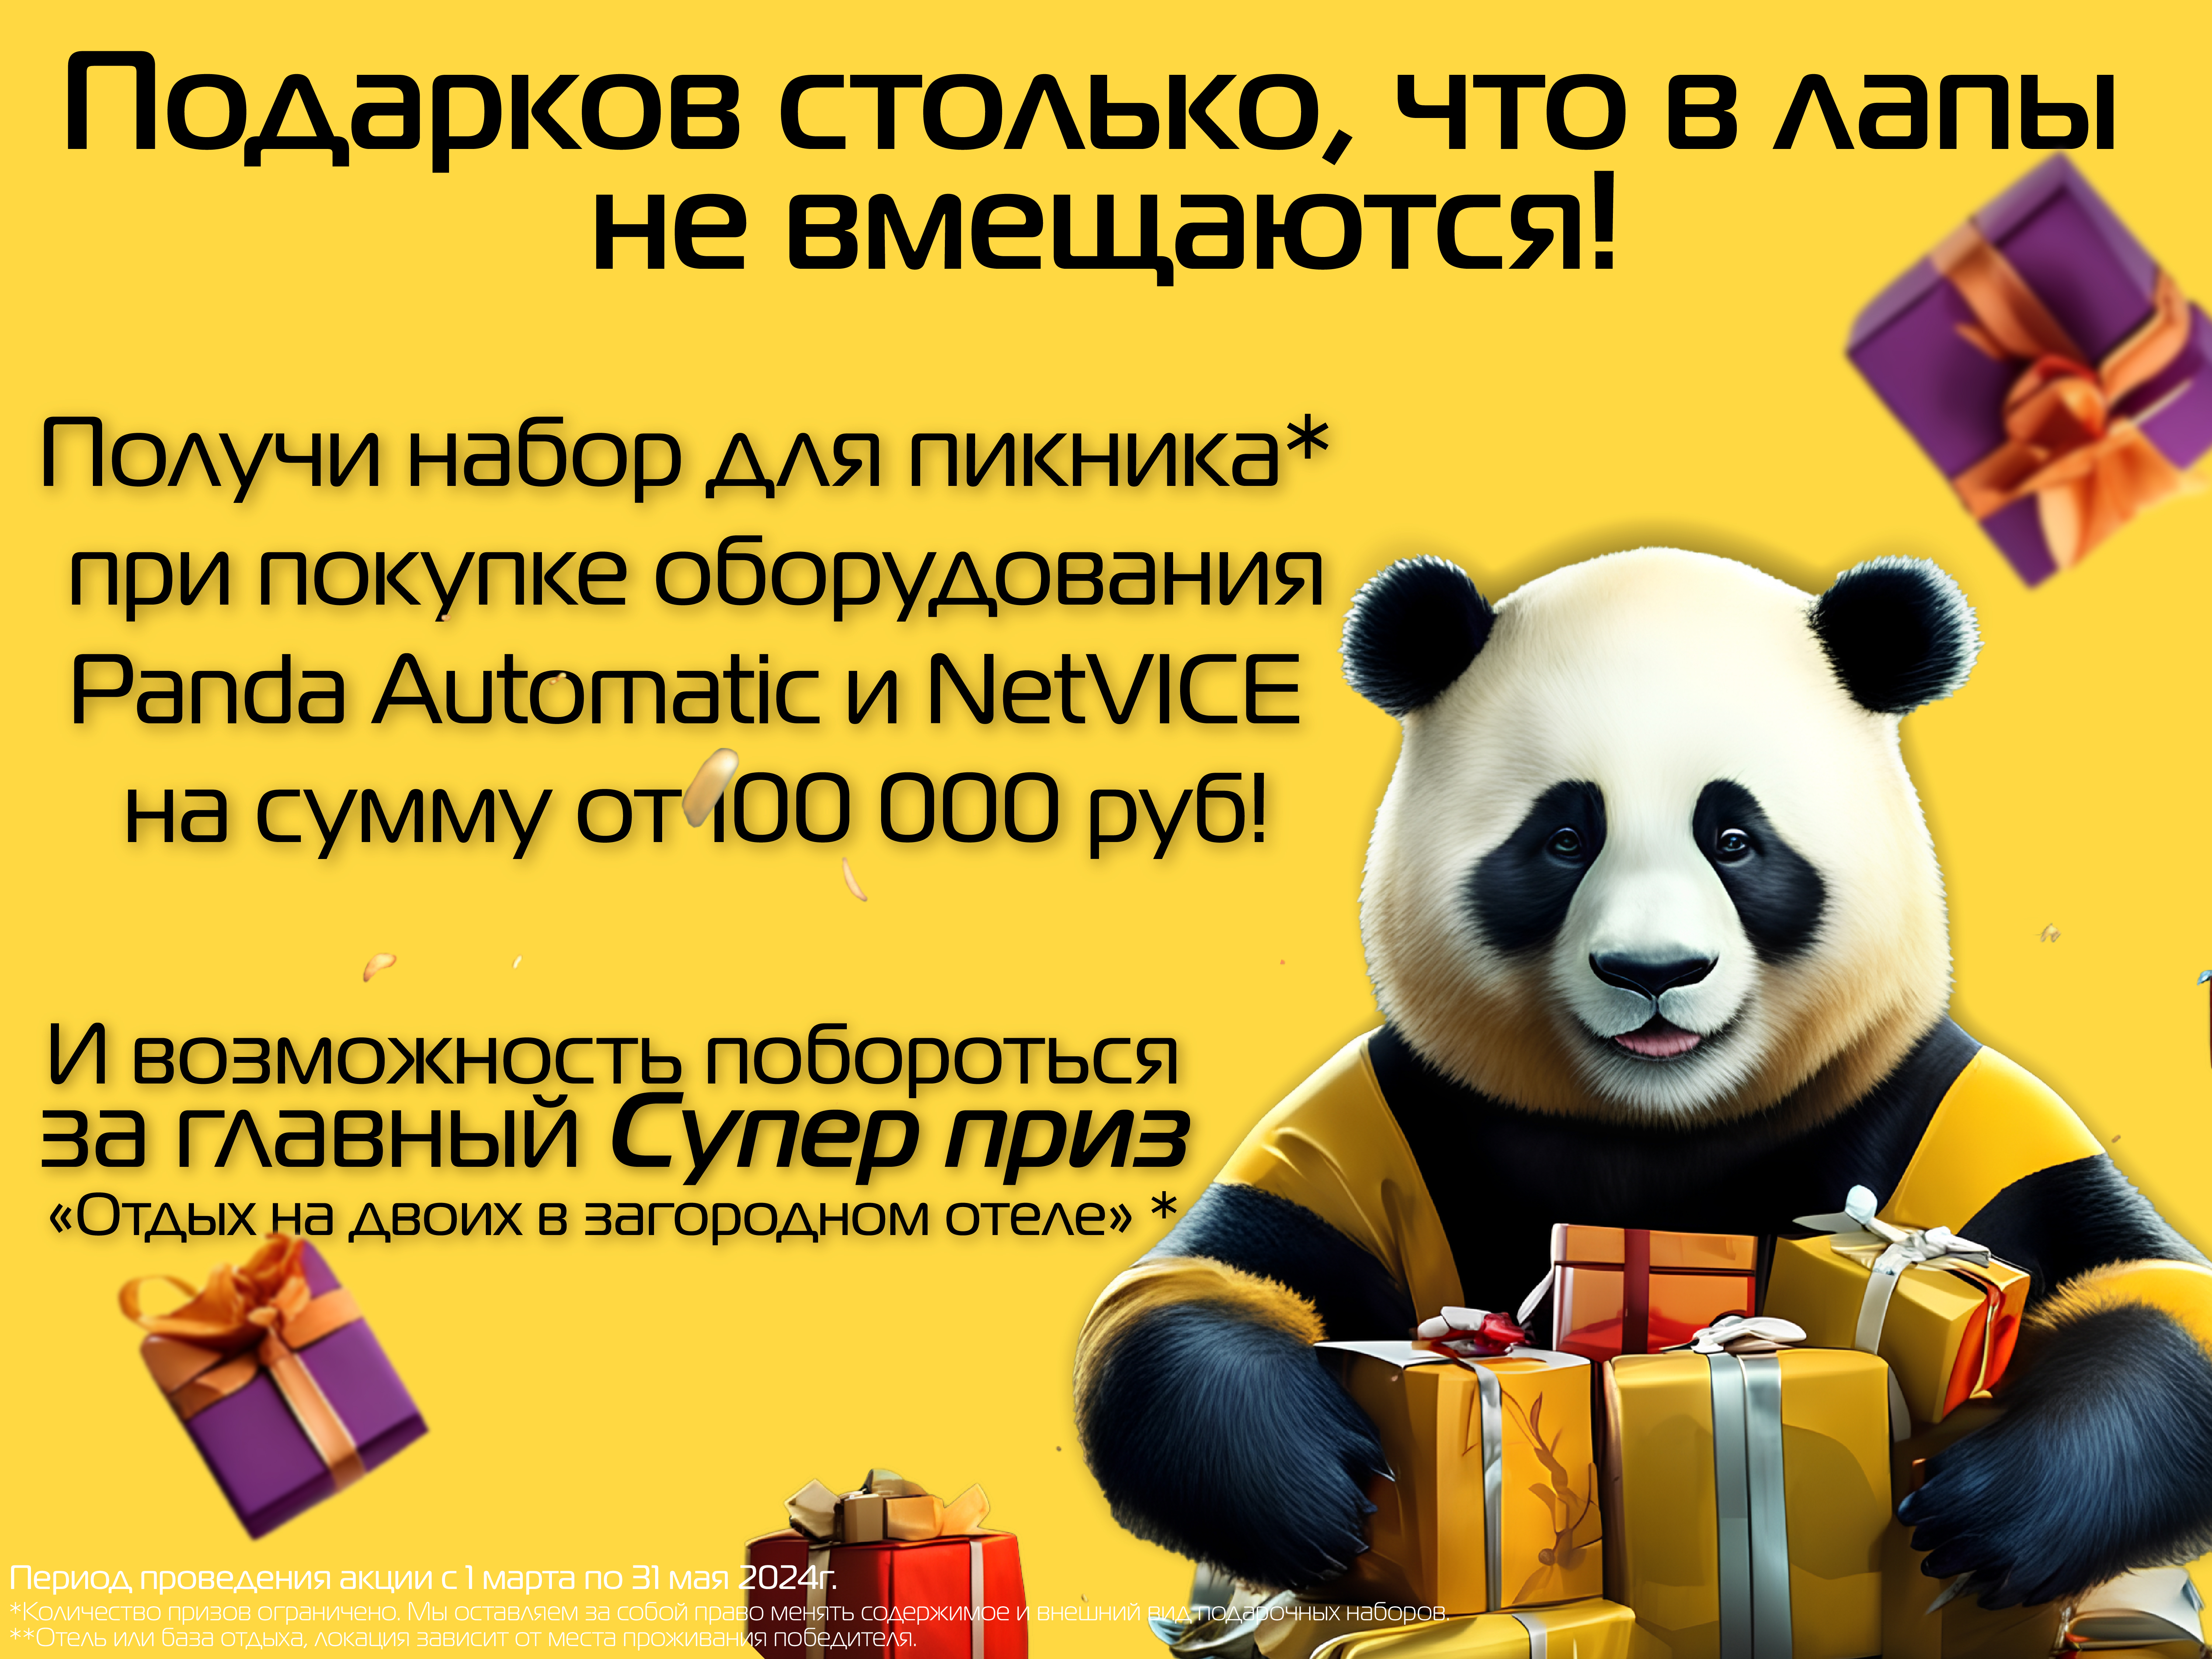 Panda Automatic дарит подарки!